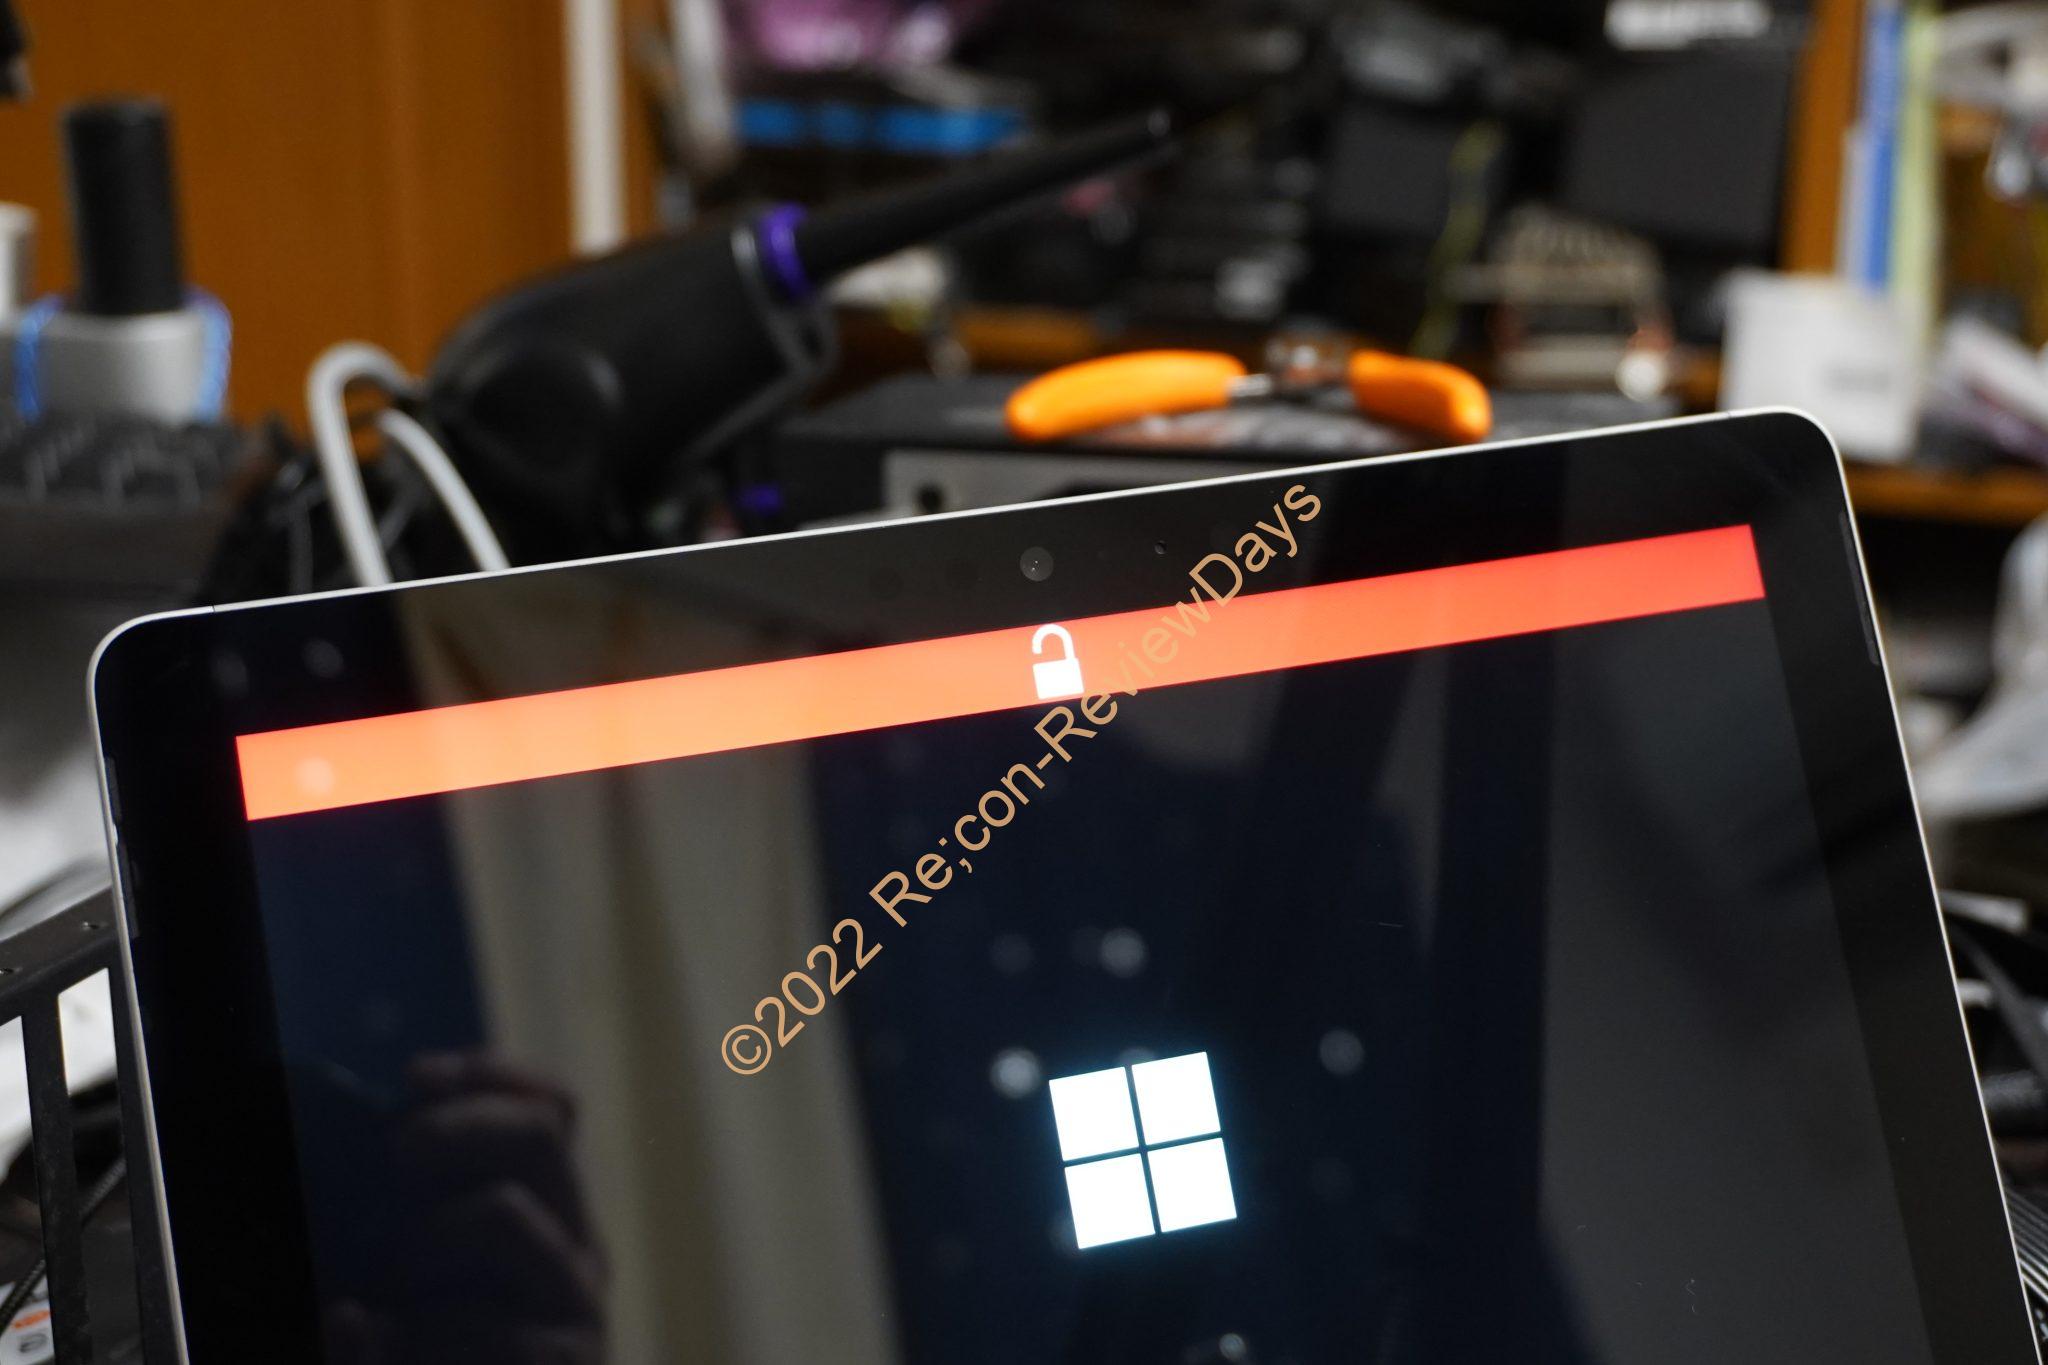 Microsoft Surfaceシリーズで起動時に赤いバーと南京錠アイコンが表示される場合の対象方法について #Microsoft #Surface #SurfaceGo